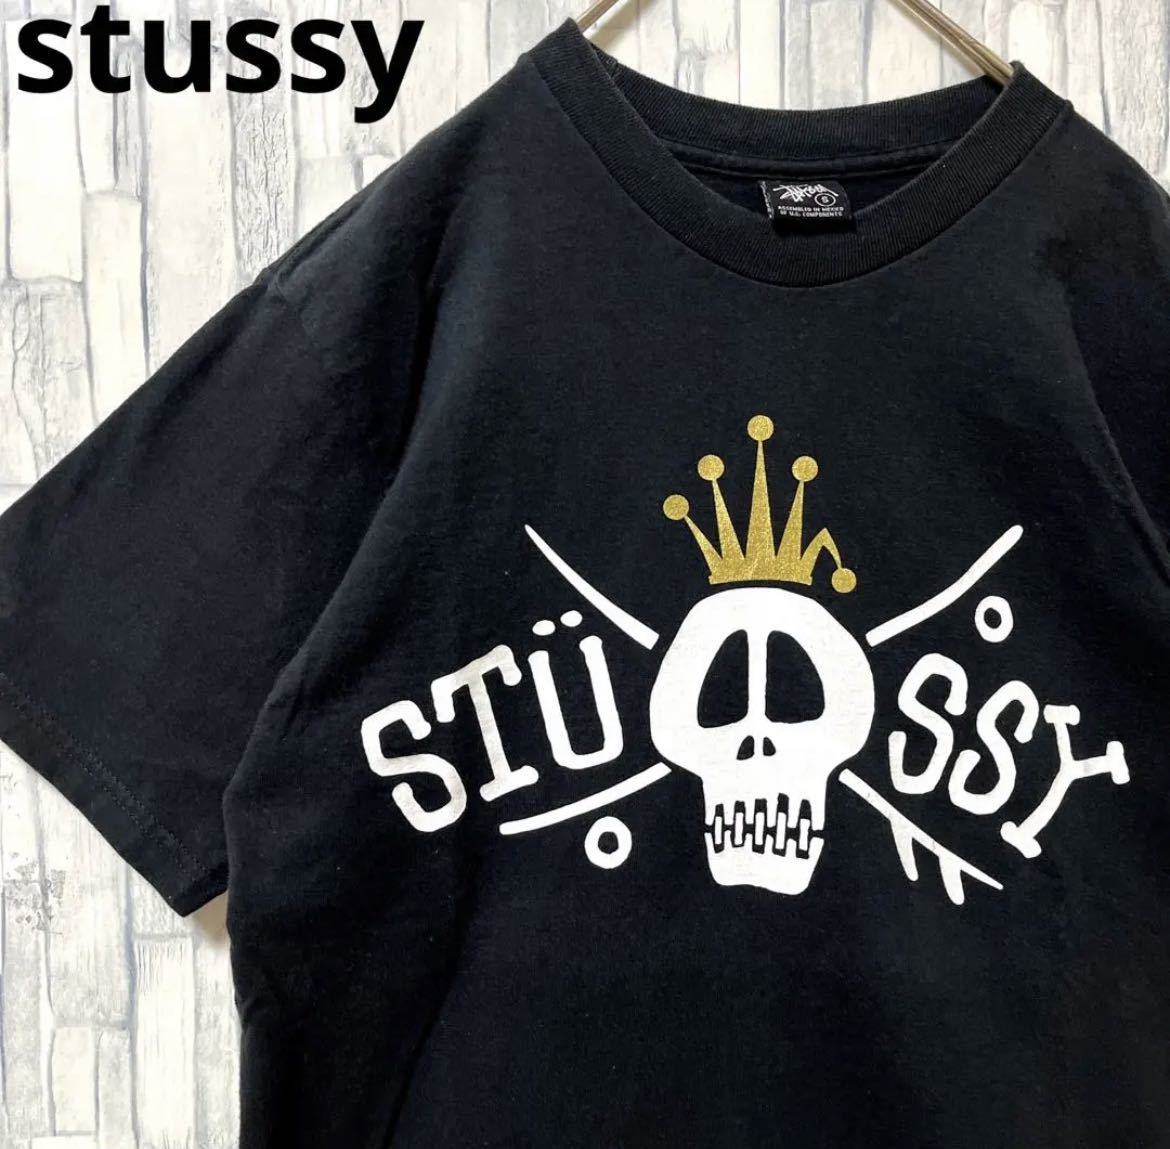 stussy ステューシー 半袖 Tシャツ ビッグロゴ デカロゴ サイズS ブラック スカル ドクロ ガイコツ 送料無料